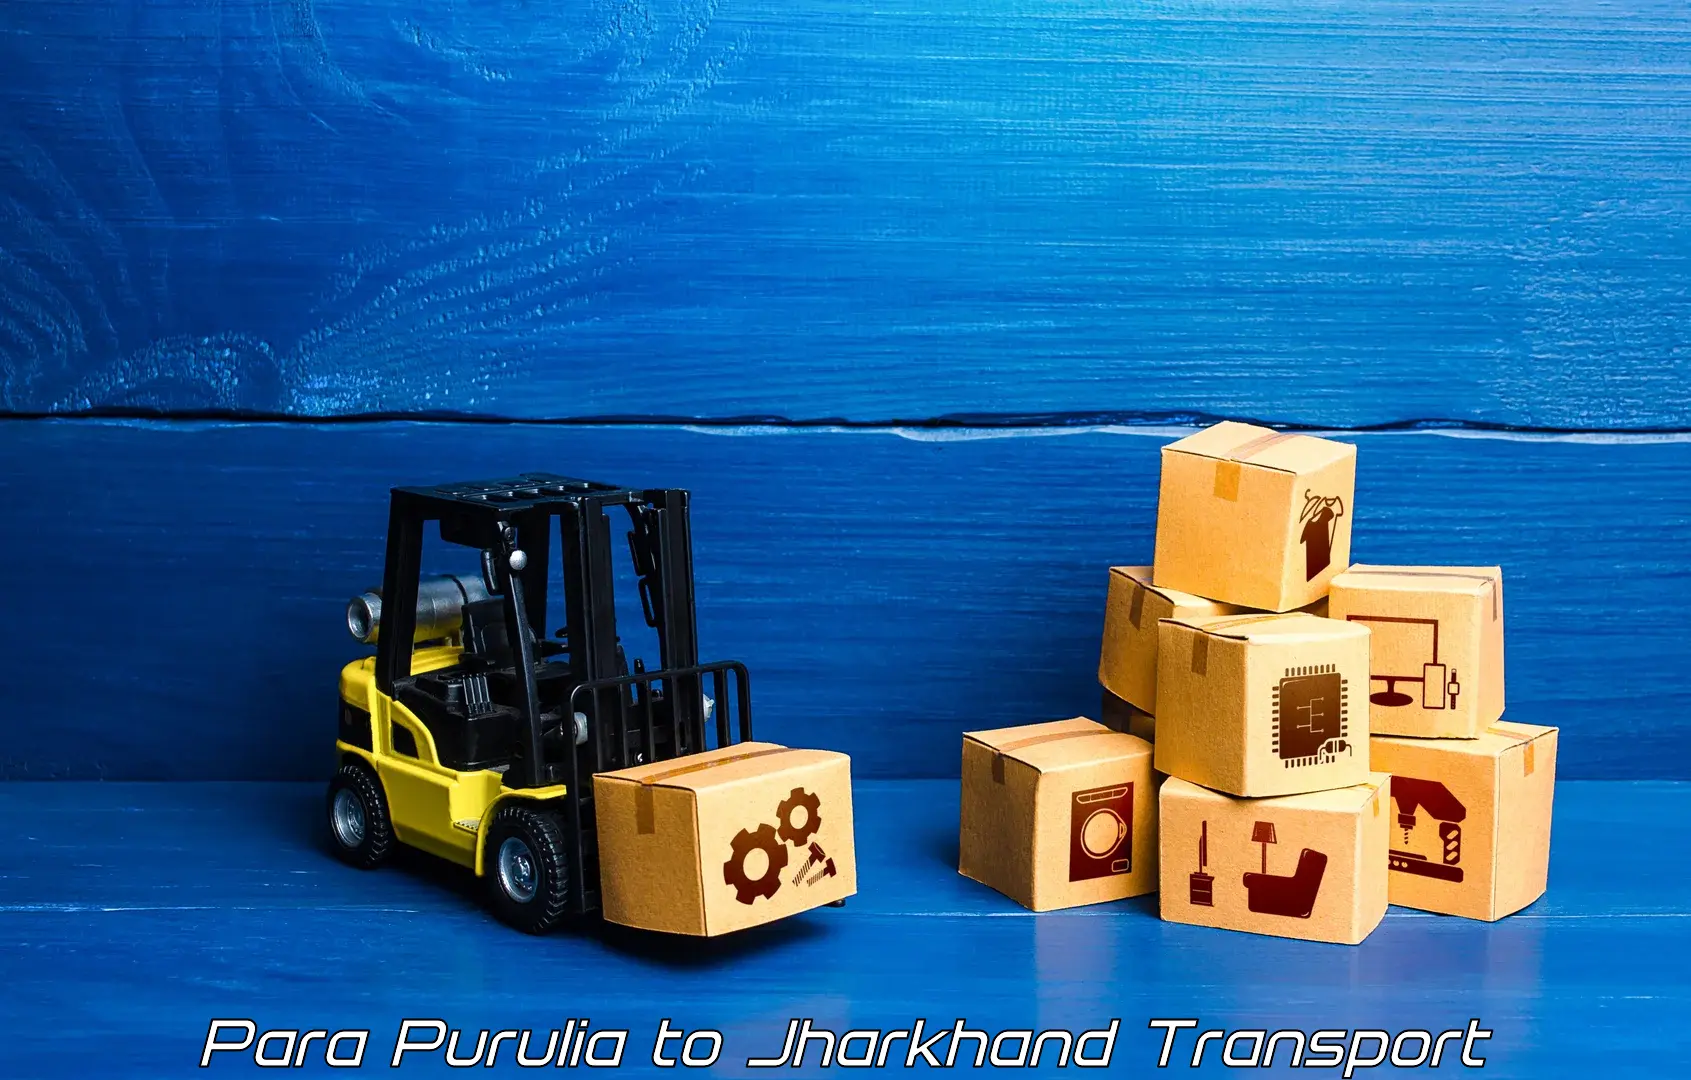 Cargo train transport services in Para Purulia to Boarijore